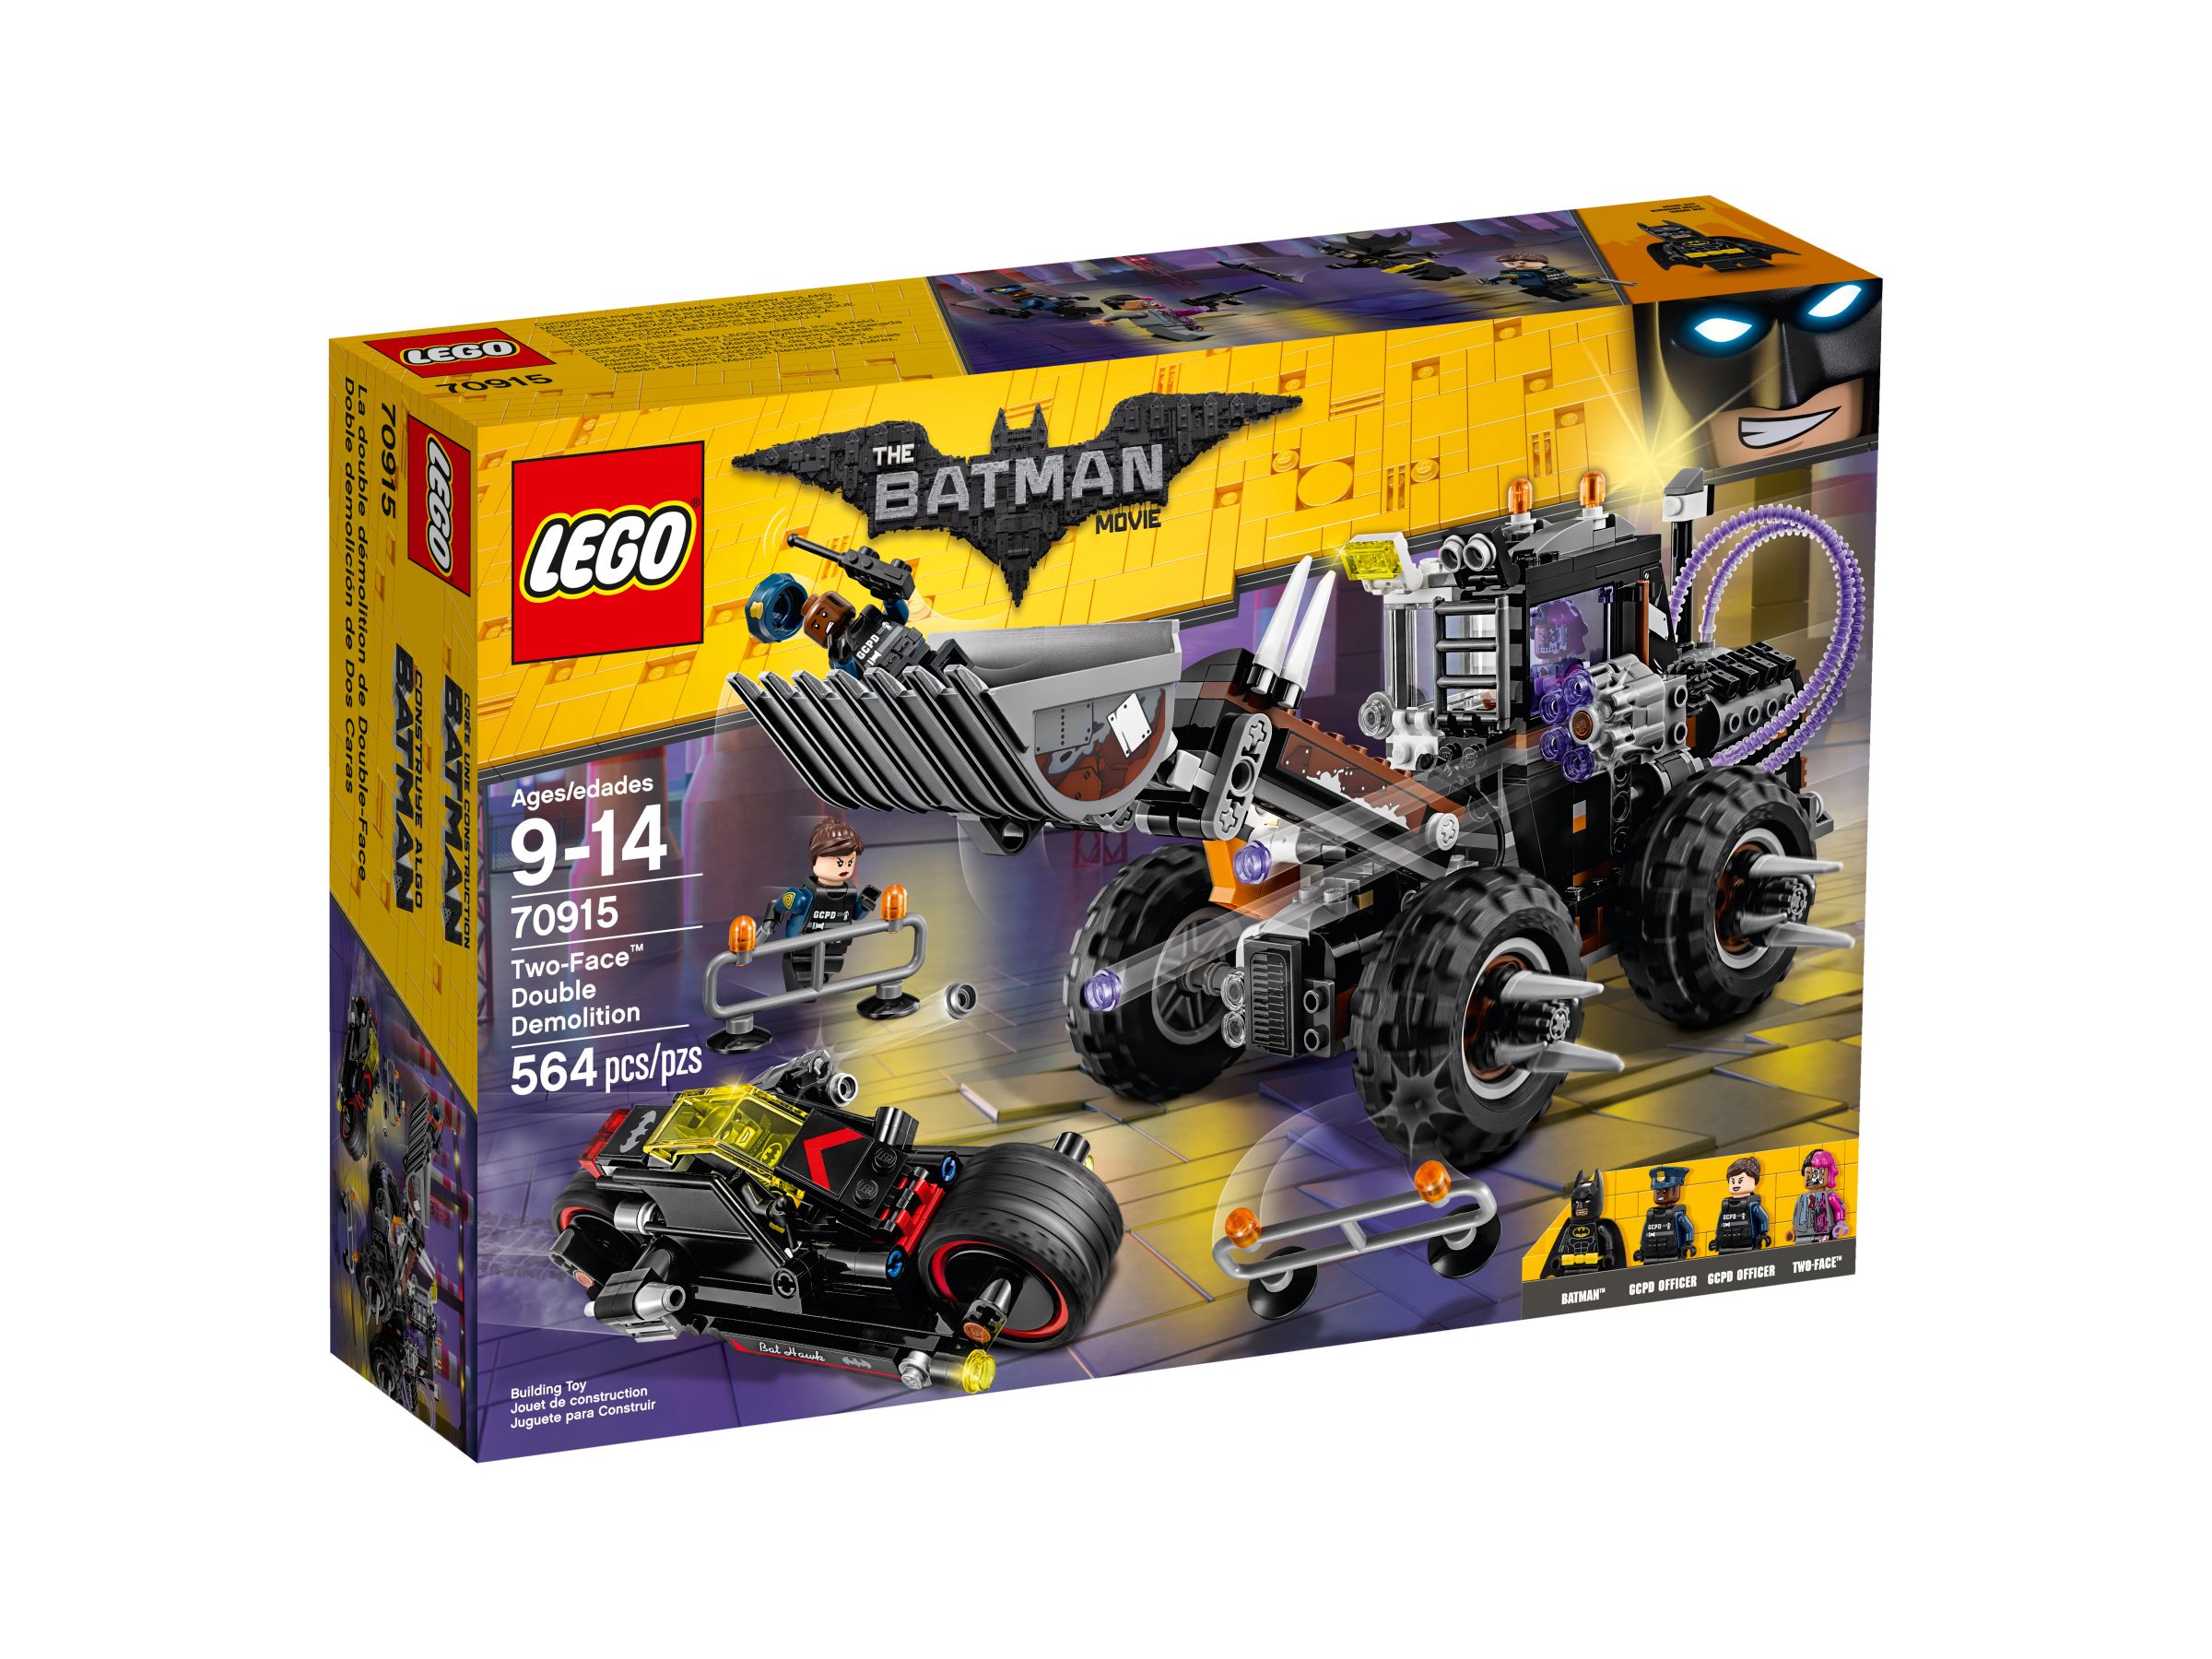 LEGO The LEGO Batman Movie 70915 Doppeltes Unheil durch Two-Face™ LEGO_70915_alt1.jpg